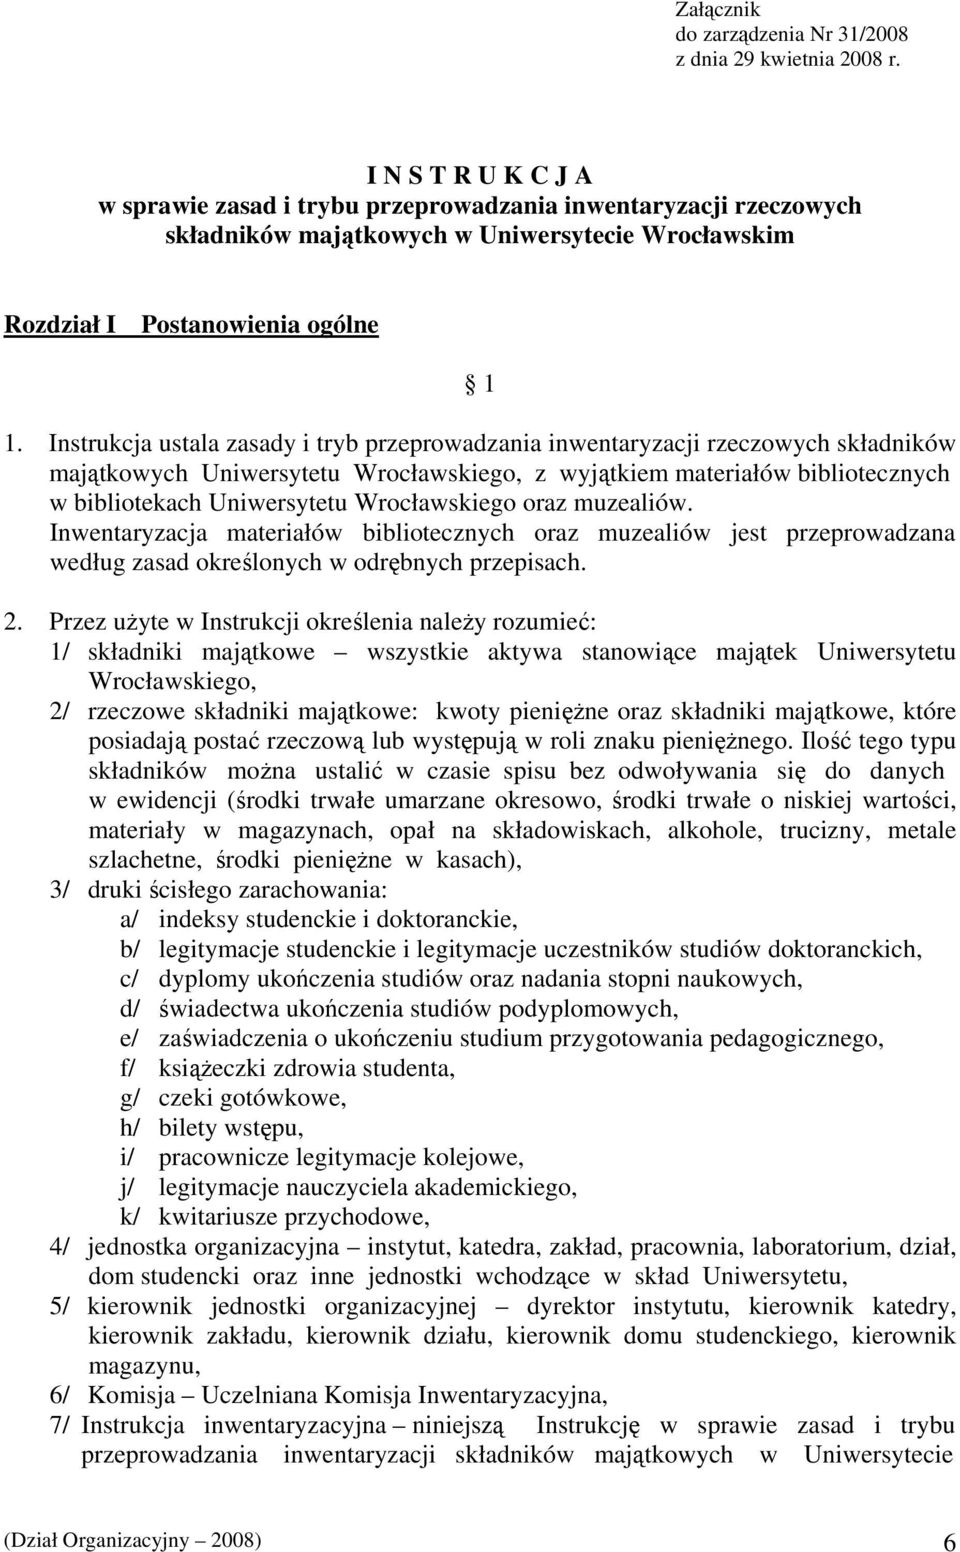 Instrukcja ustala zasady i tryb przeprowadzania inwentaryzacji rzeczowych składników majątkowych Uniwersytetu Wrocławskiego, z wyjątkiem materiałów bibliotecznych w bibliotekach Uniwersytetu